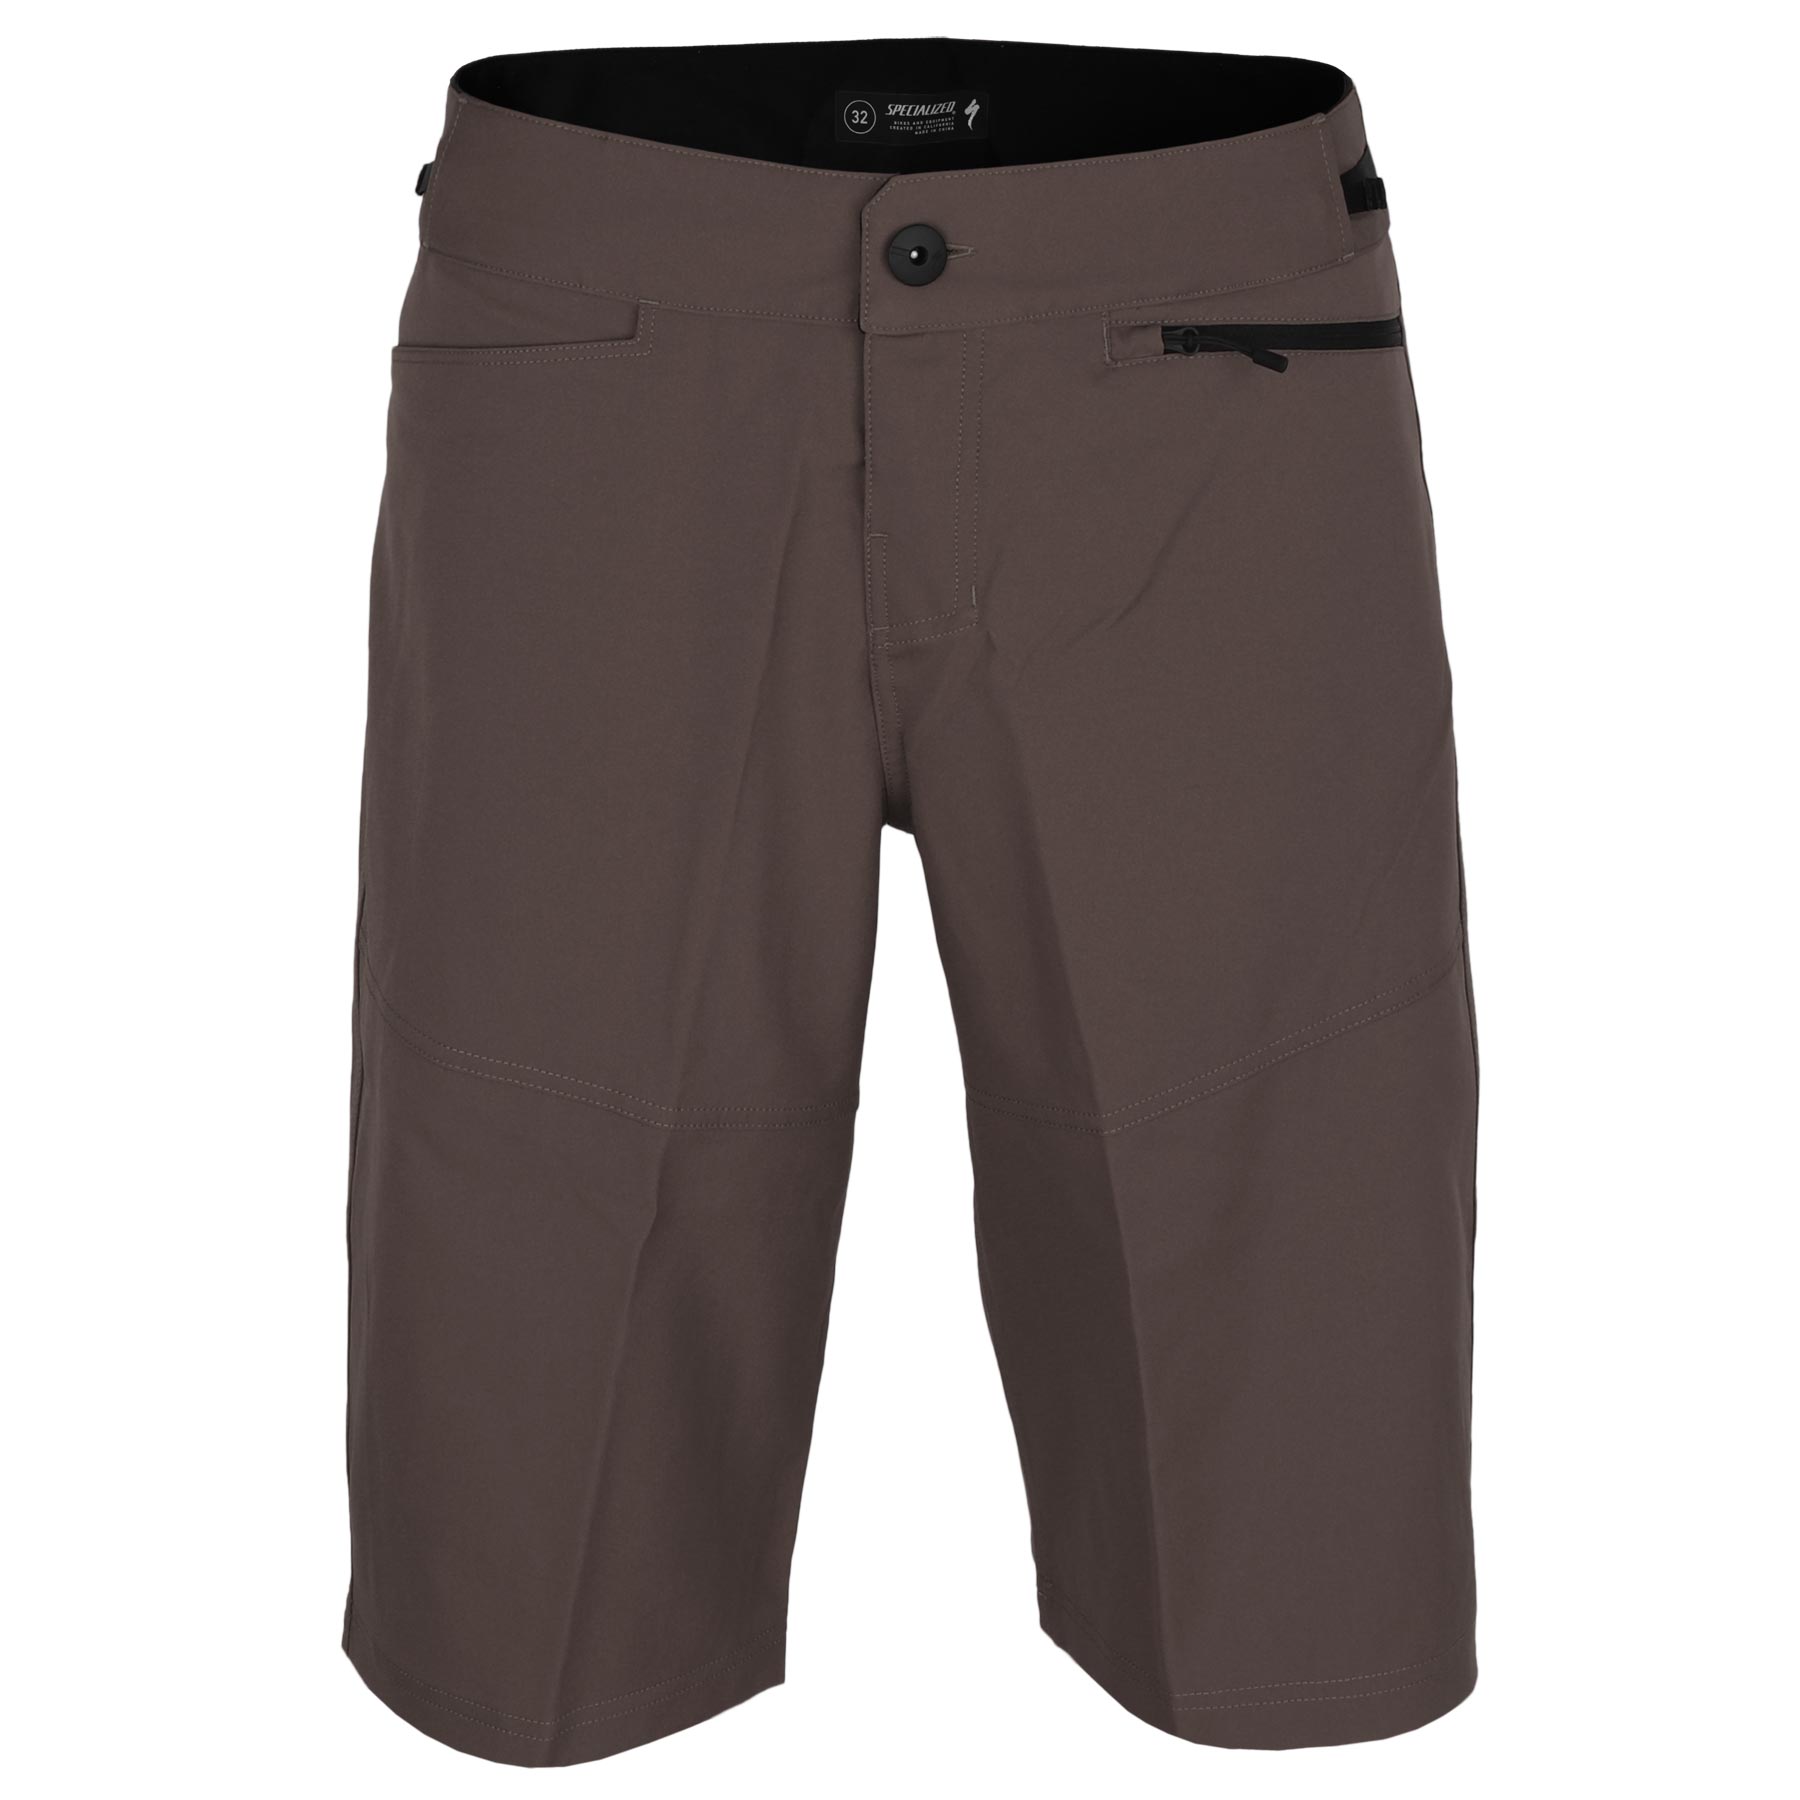 Produktbild von Specialized Trail Shorts mit Innenhose - charcoal